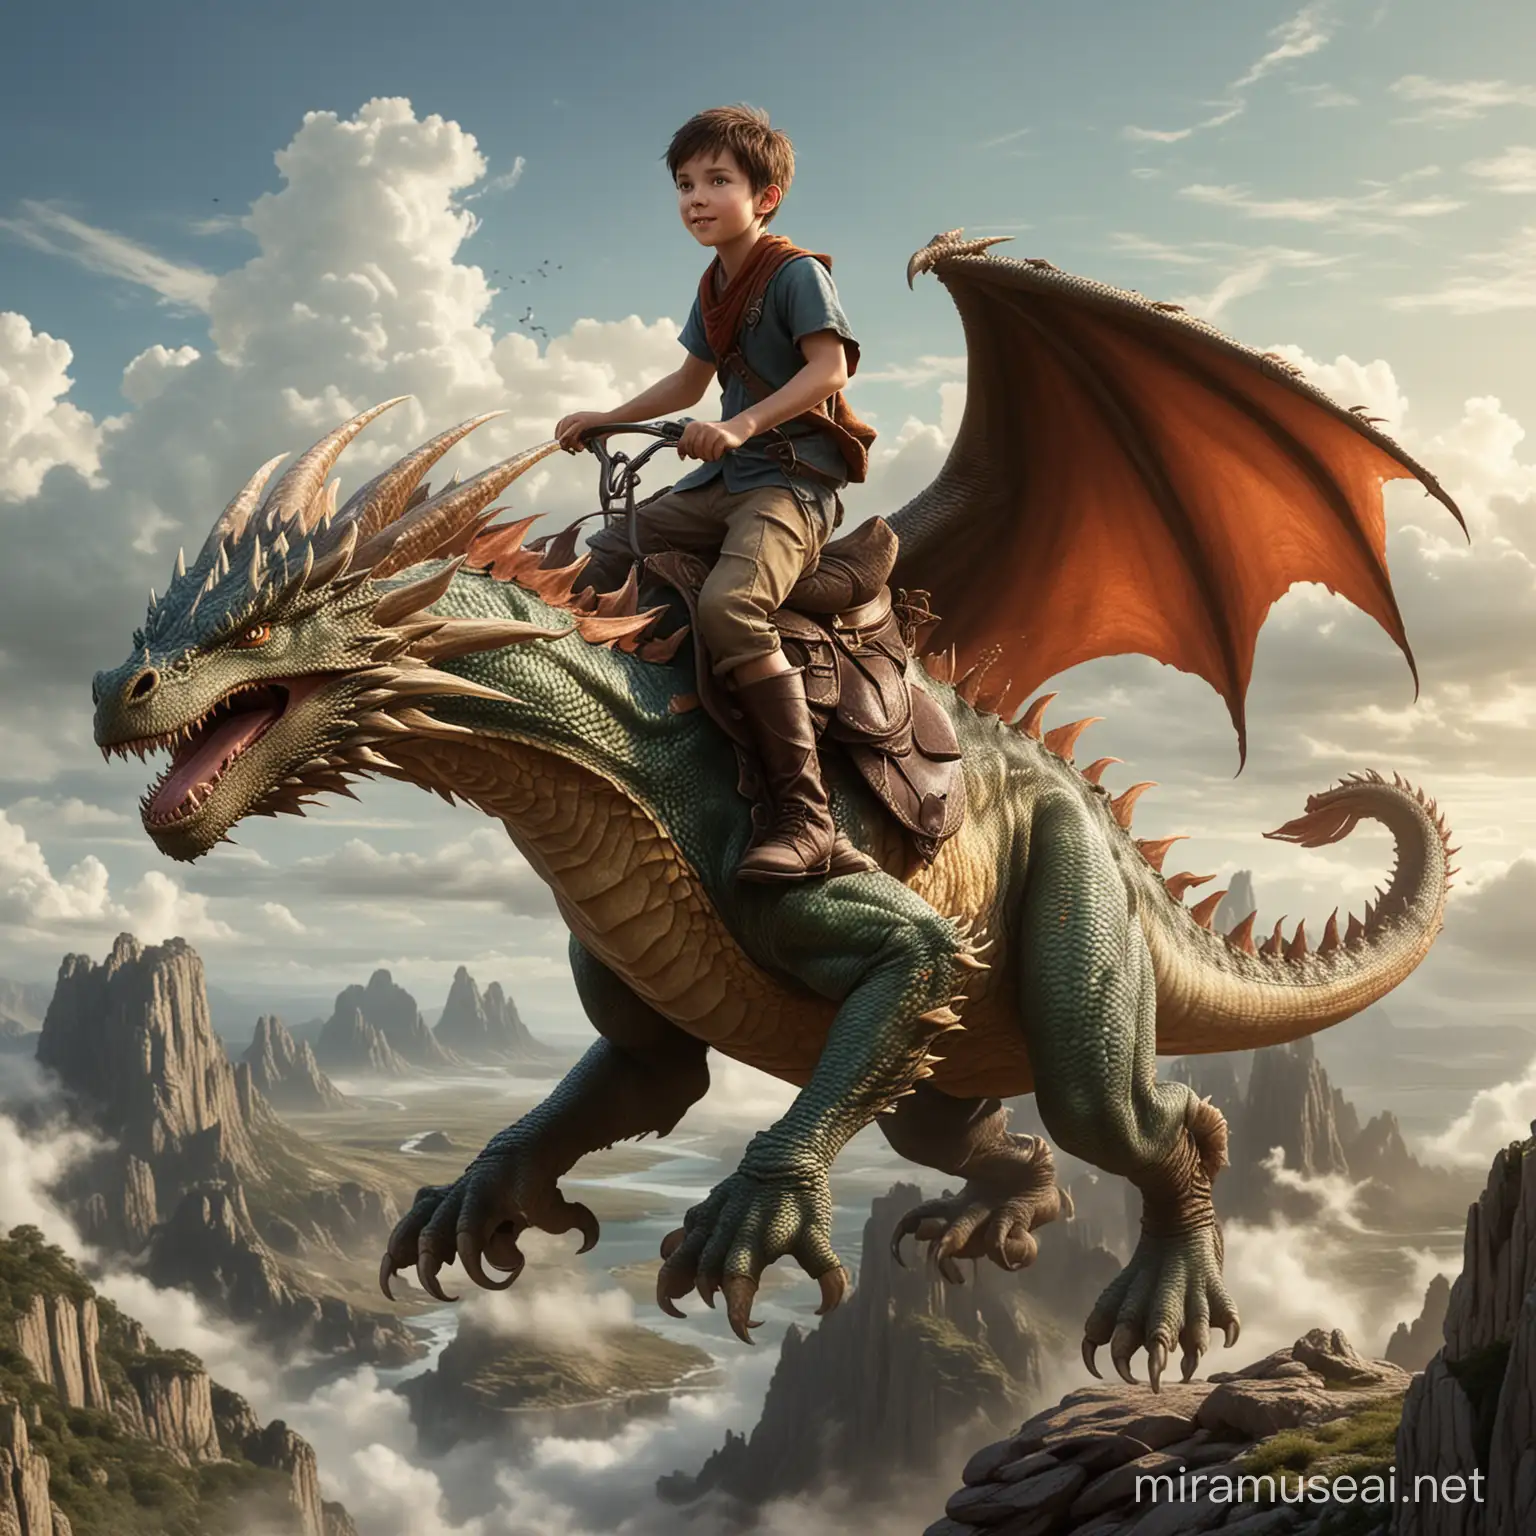 Un garçon chevauchant un dragon dans un style réaliste